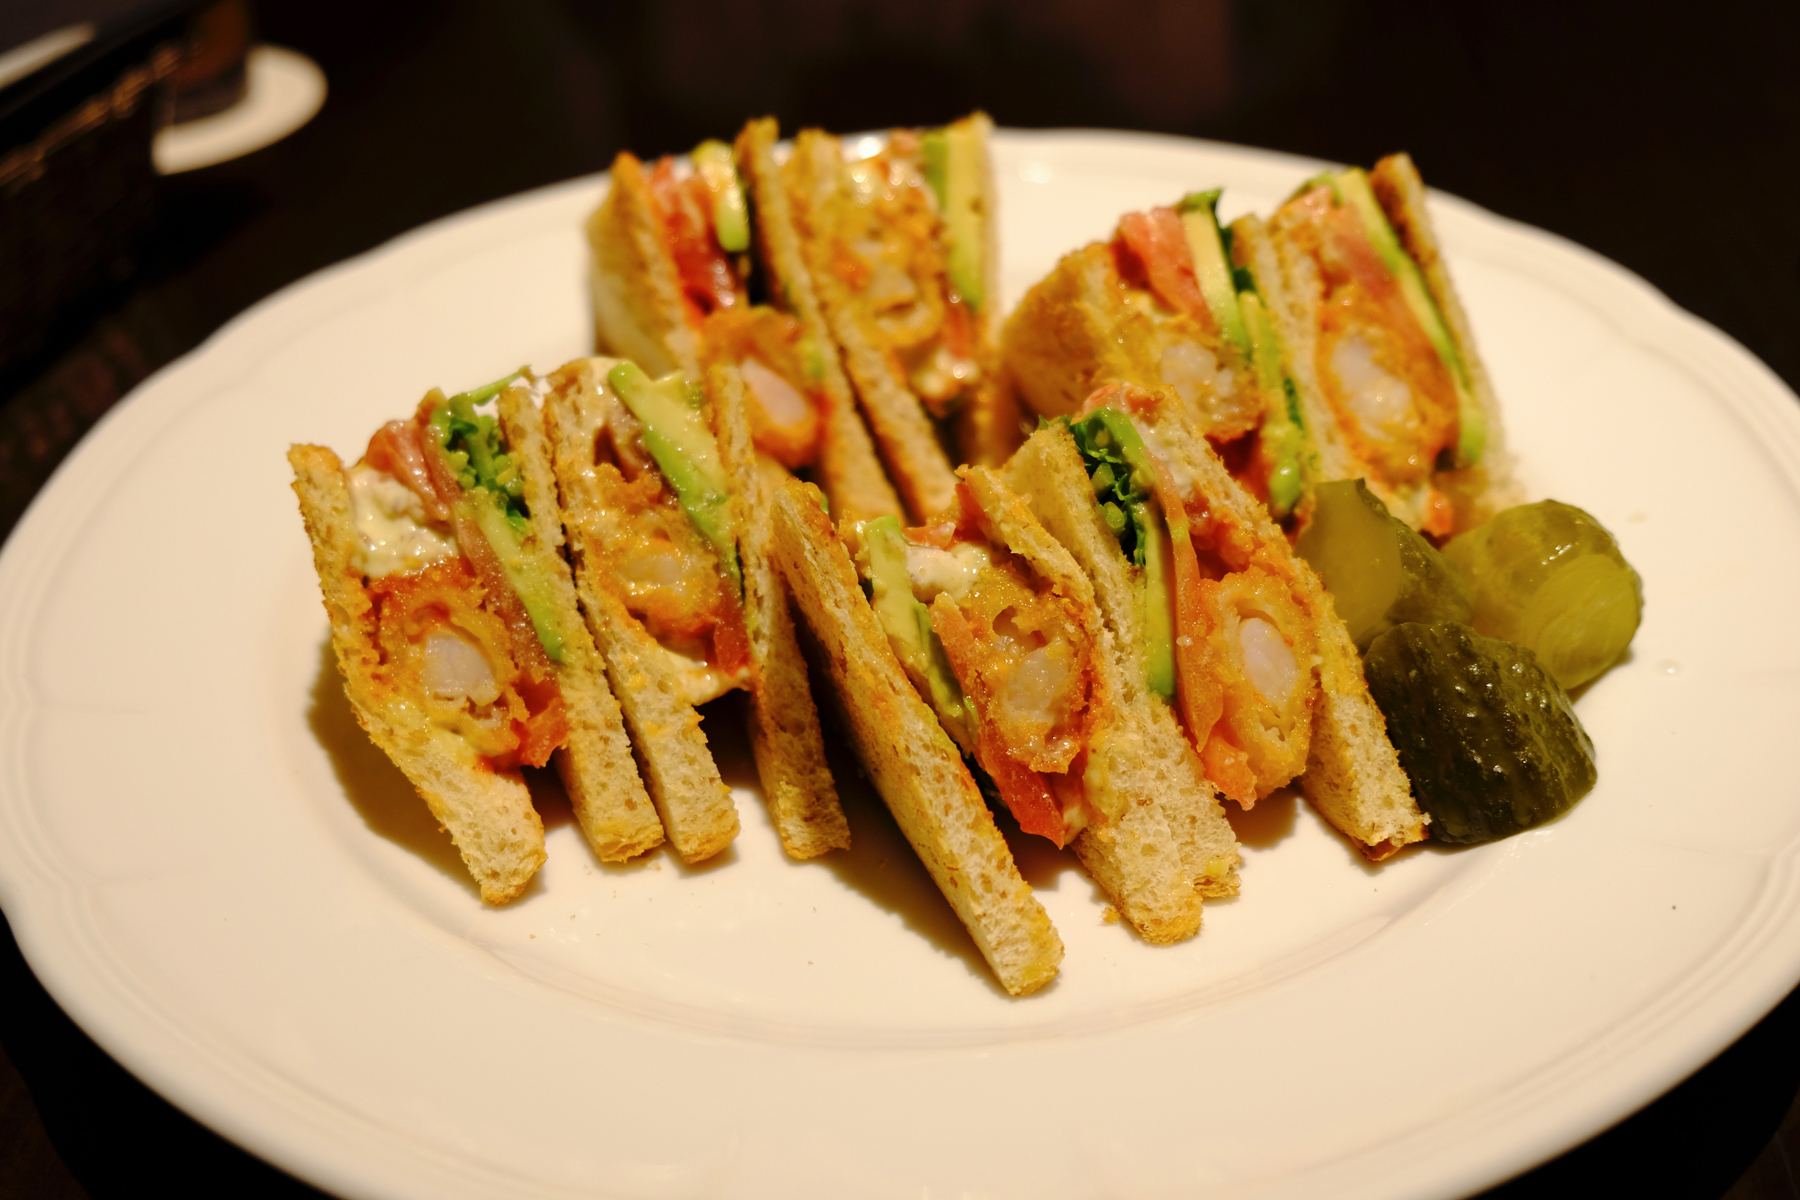 Shrimp and Avocado Sandwich